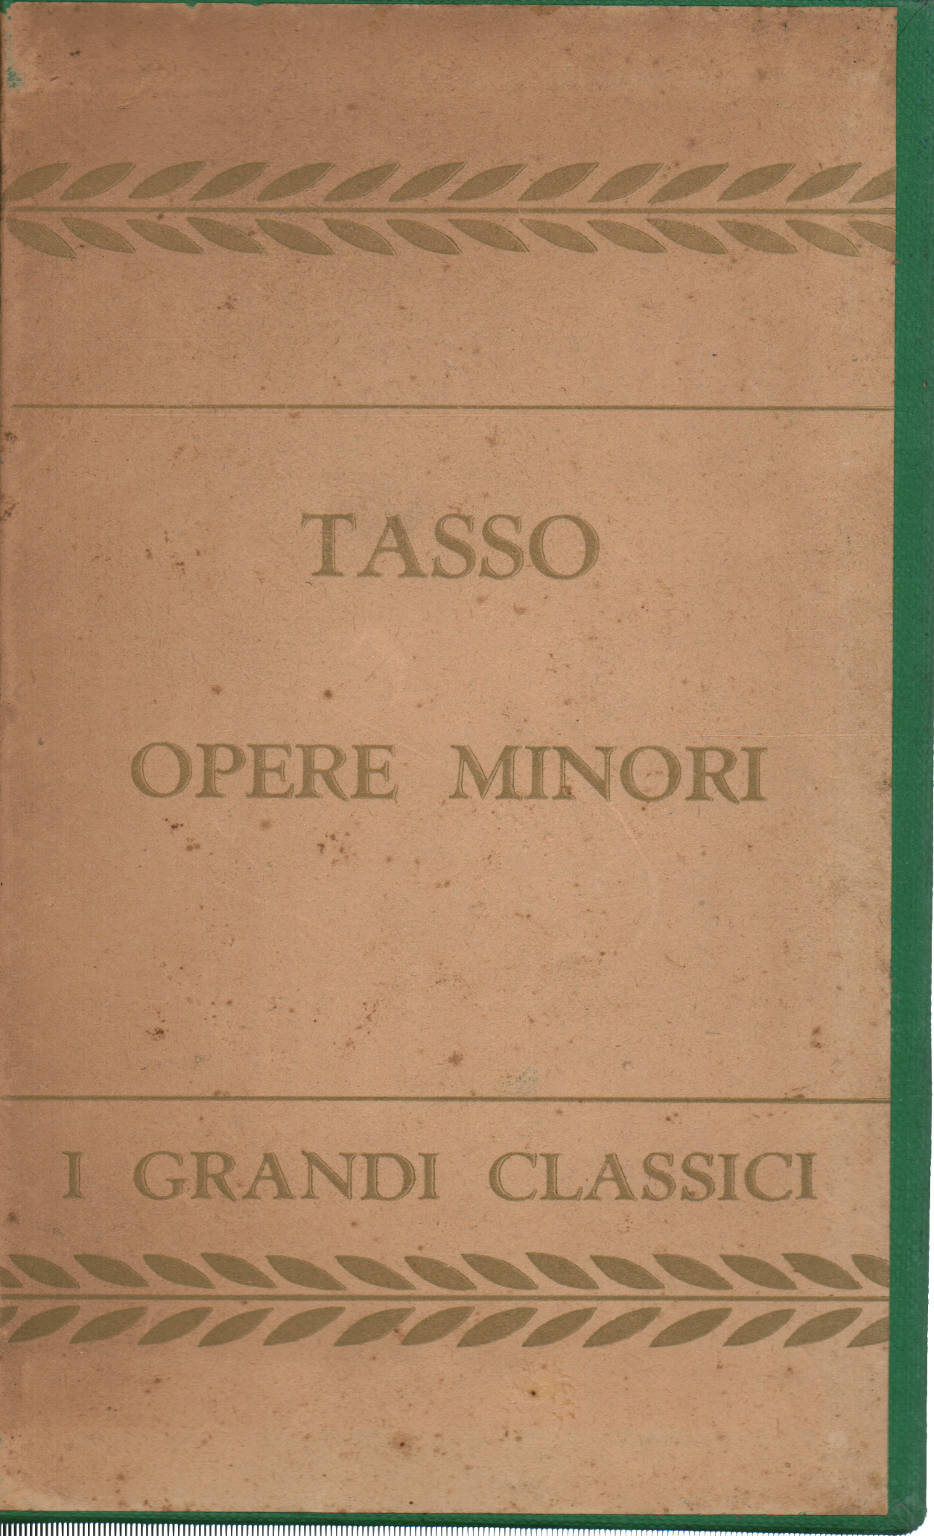 Minor works, Torquato Tasso